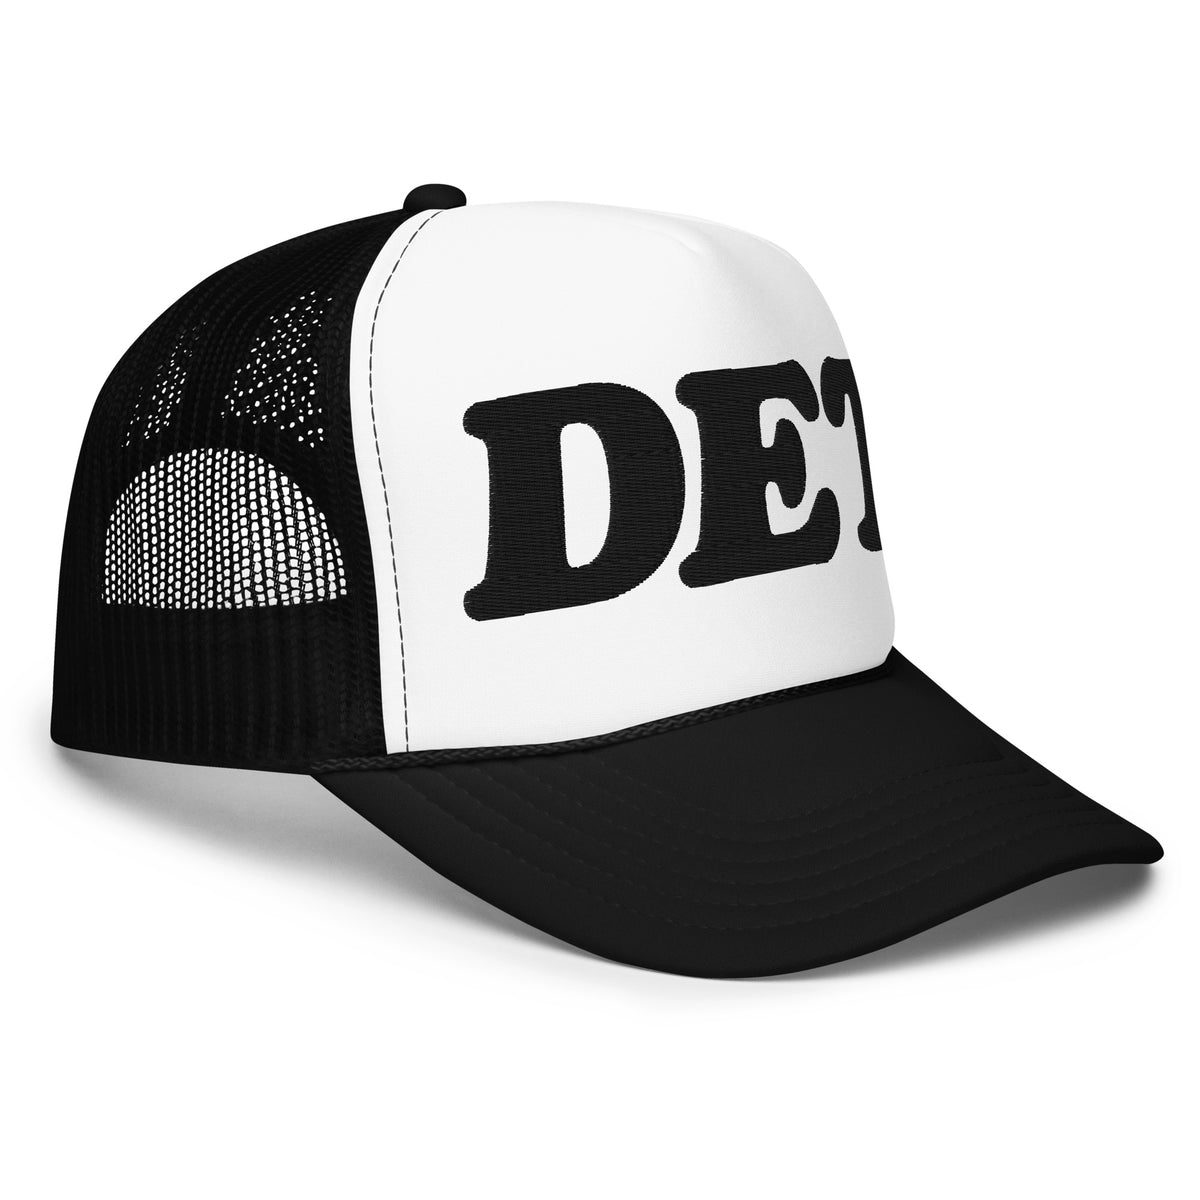 DET Foam Trucker Hat - Embroidered - Black / White    